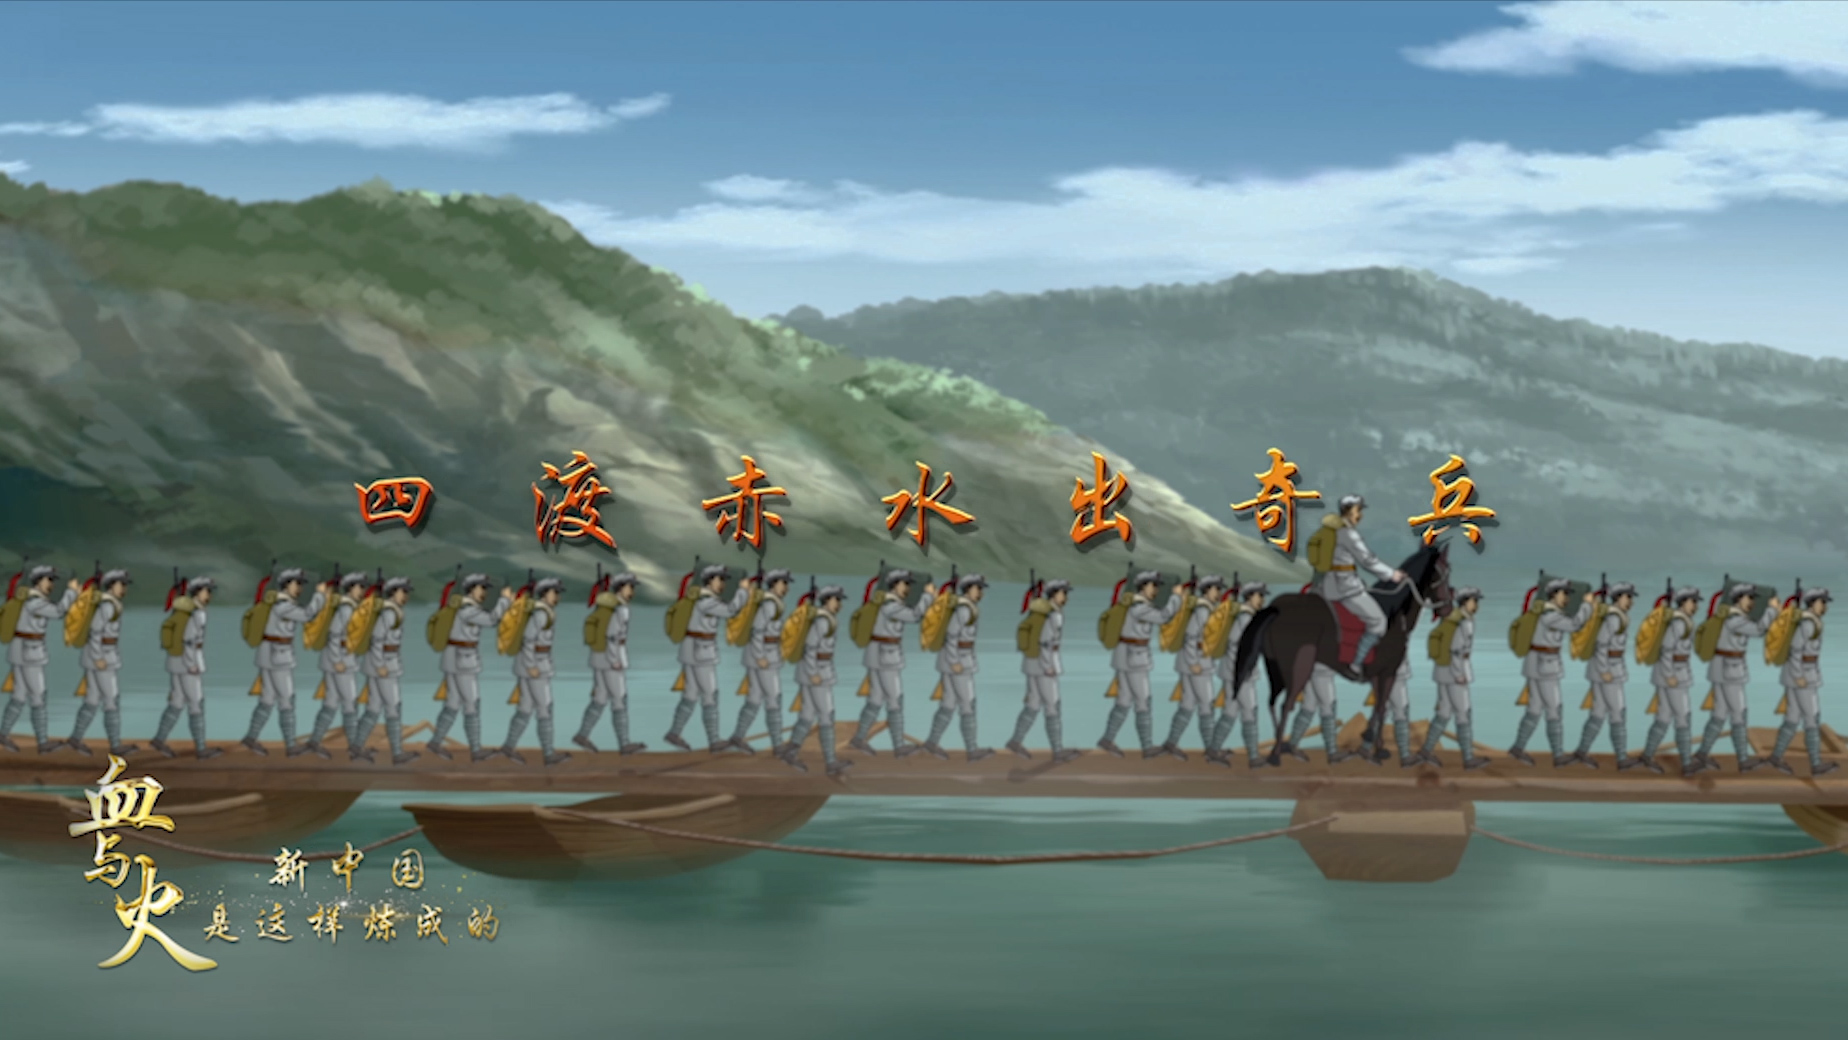 血与火新中国是这样炼成的第11集四渡赤水出奇兵